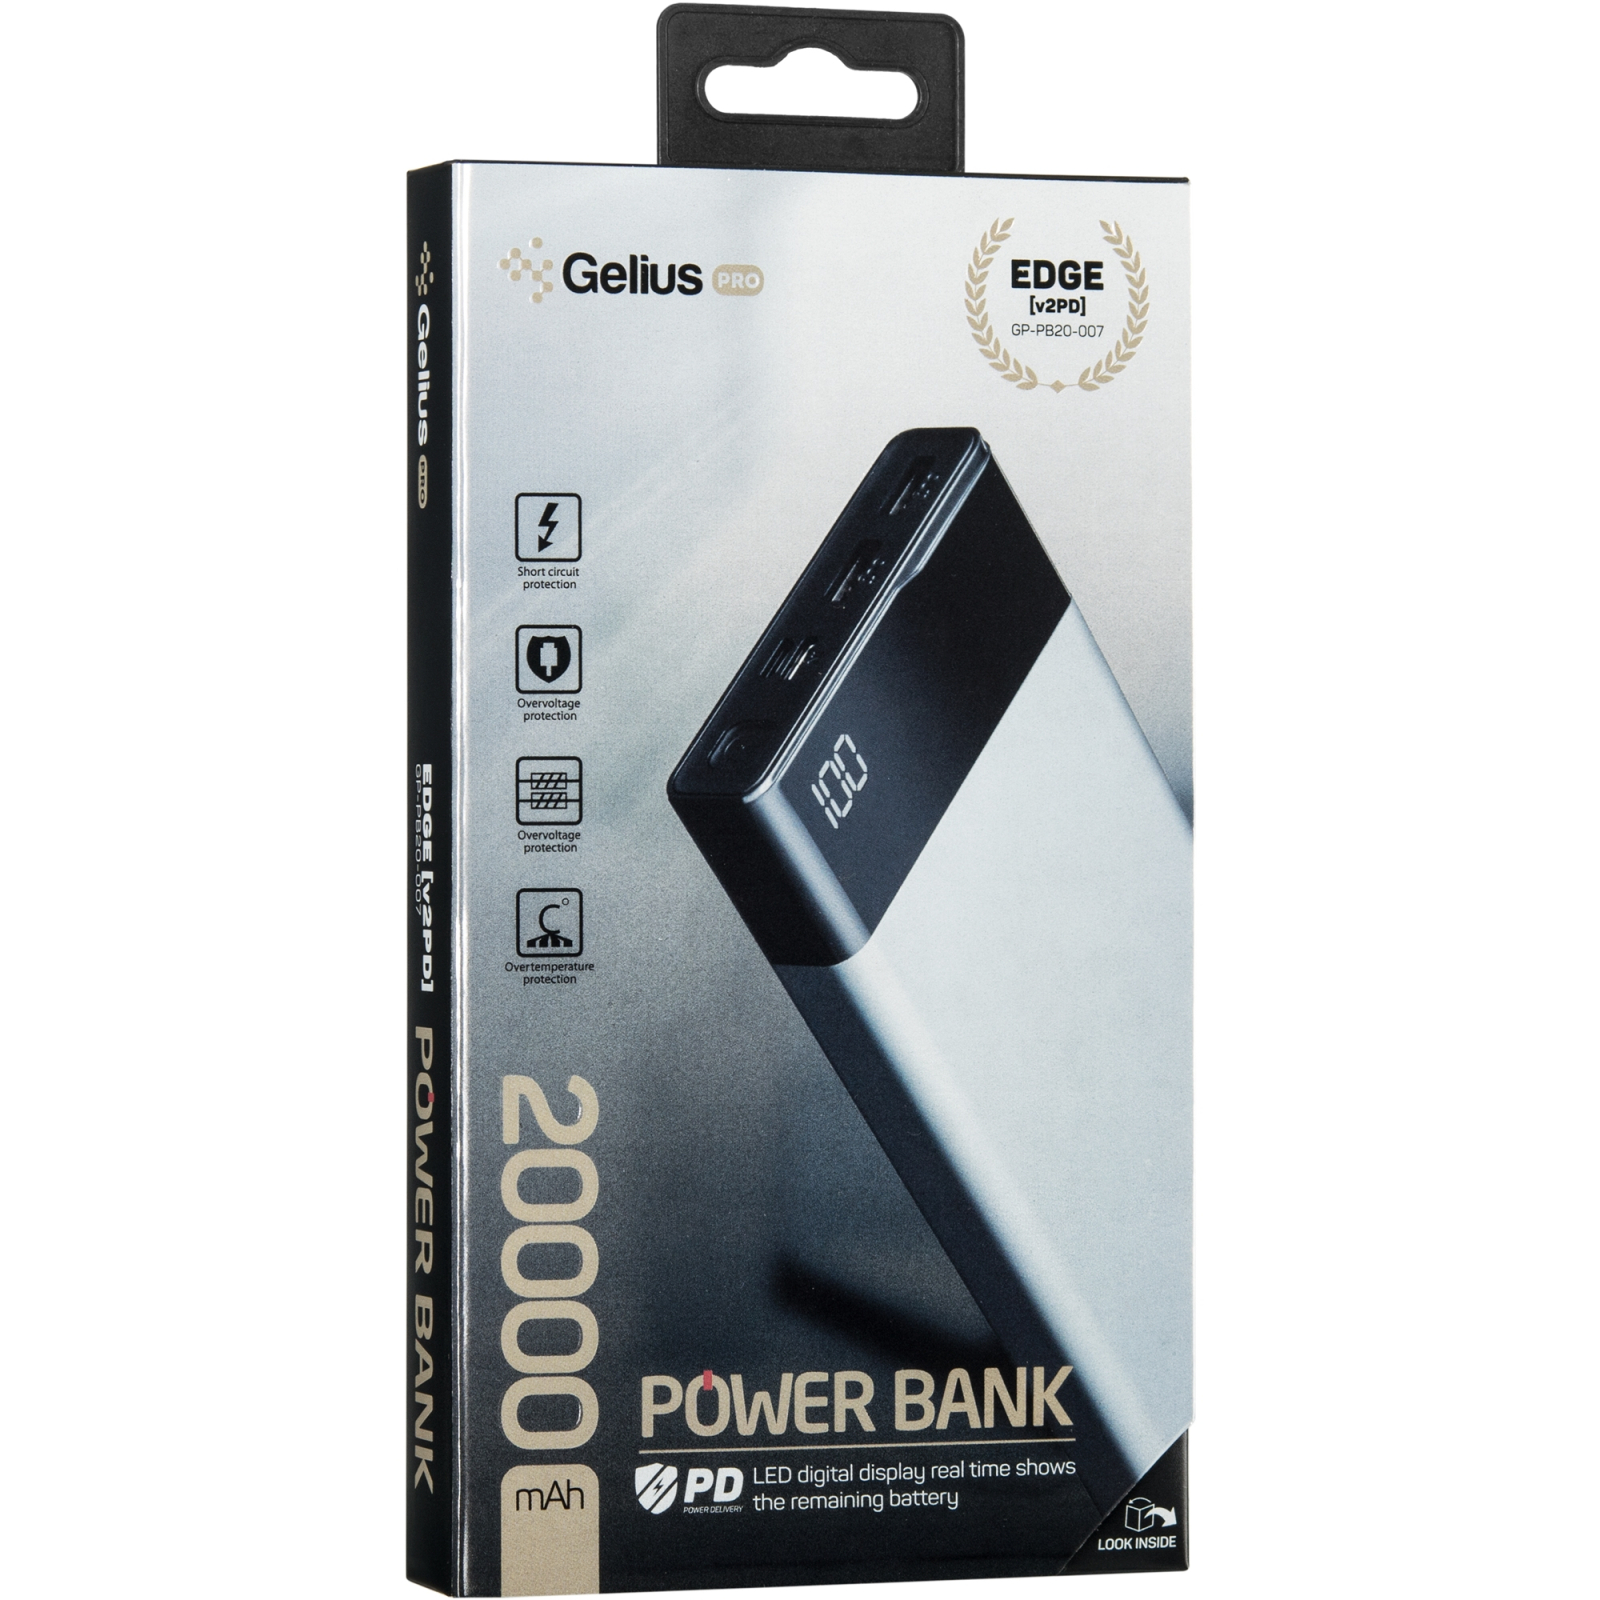 Батарея универсальная Gelius Pro Edge GP-PB20-007 20 000 mAh 2.1A Grey (72028) изображение 9